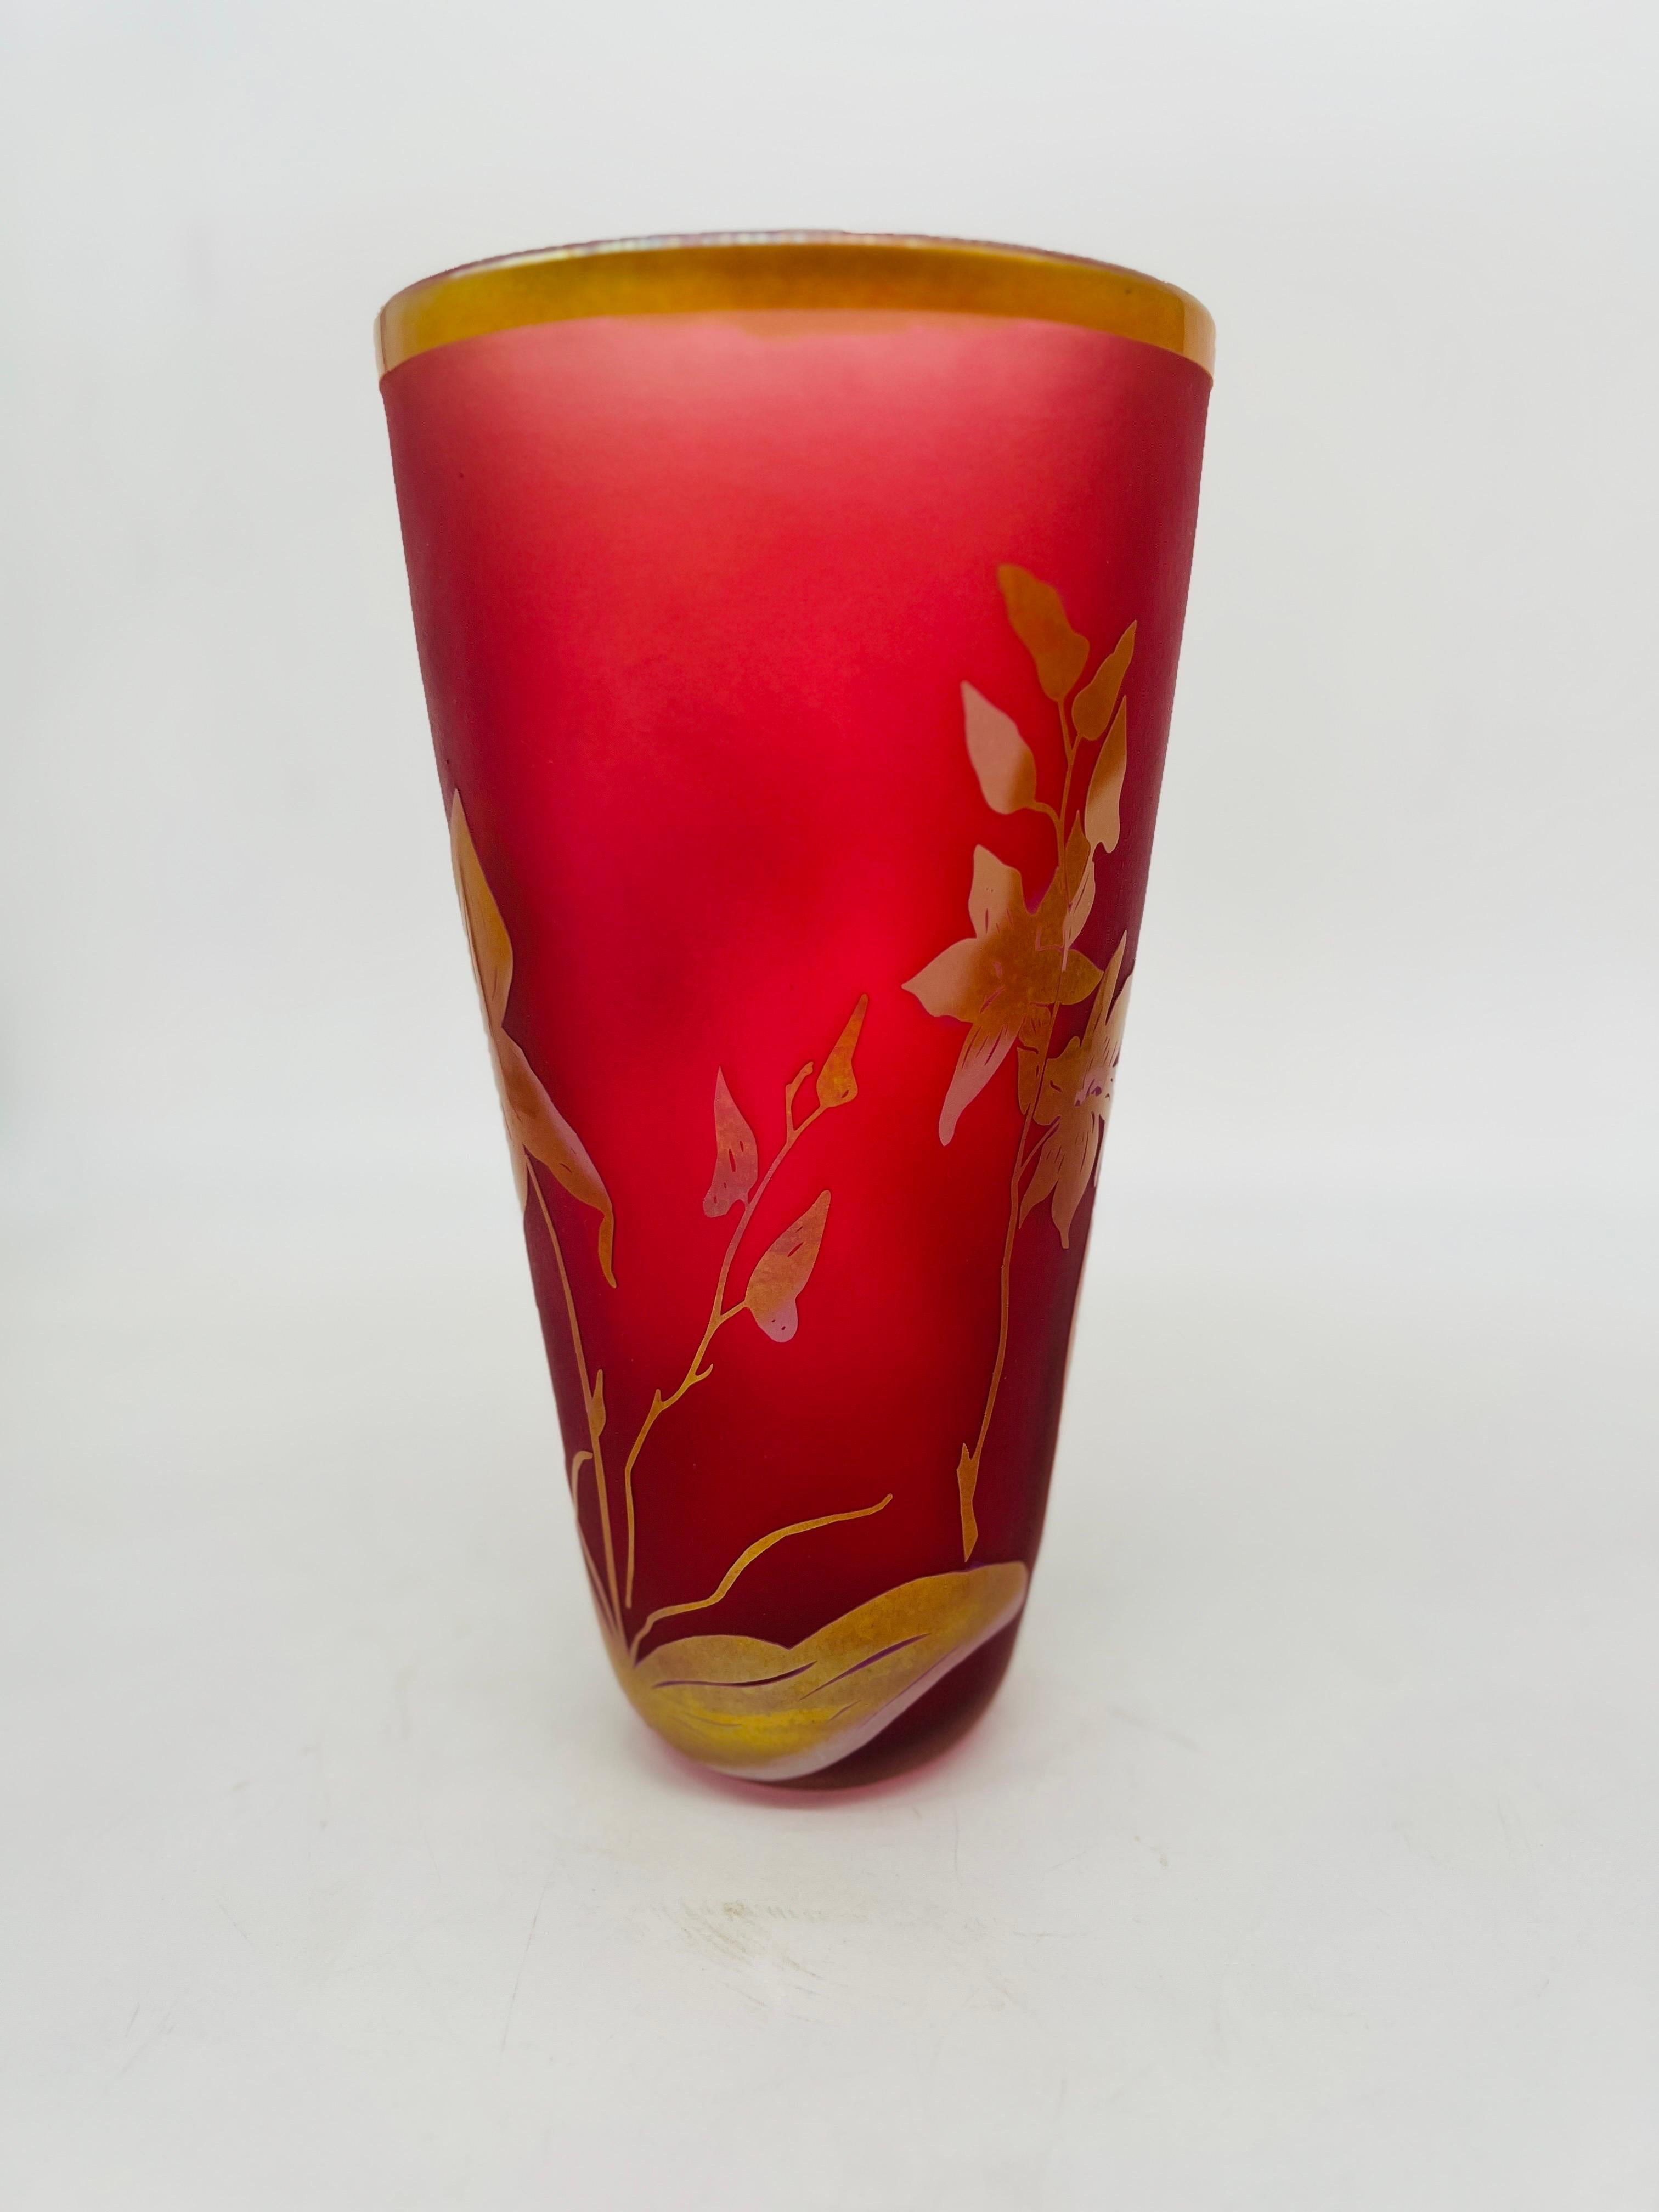 Steven Correia Limited Edition Studio Art Glass Vase Circa 2005 85 of 500 In Excellent Condition For Sale In Atlanta, GA